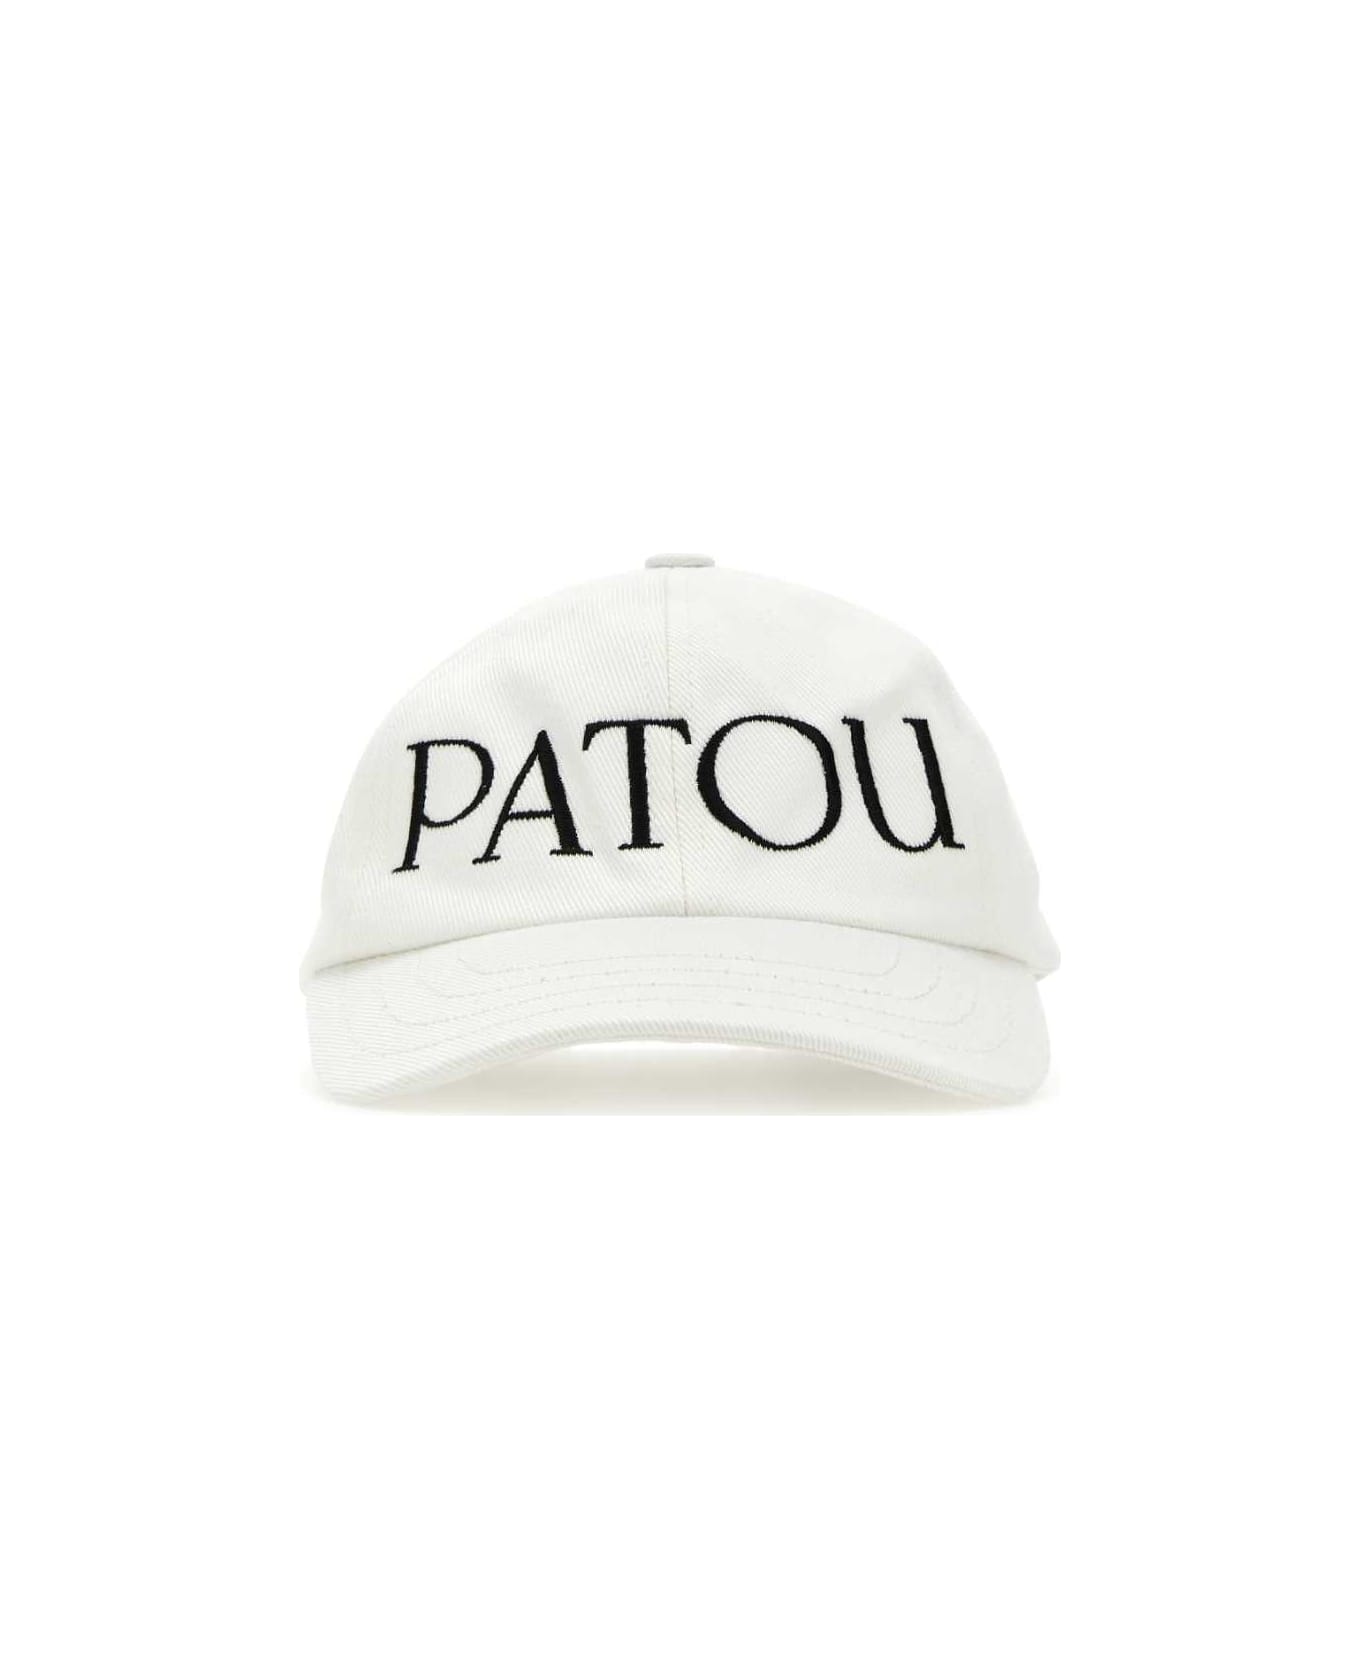 Patou White Cotton Baseball Cap - 090C 帽子